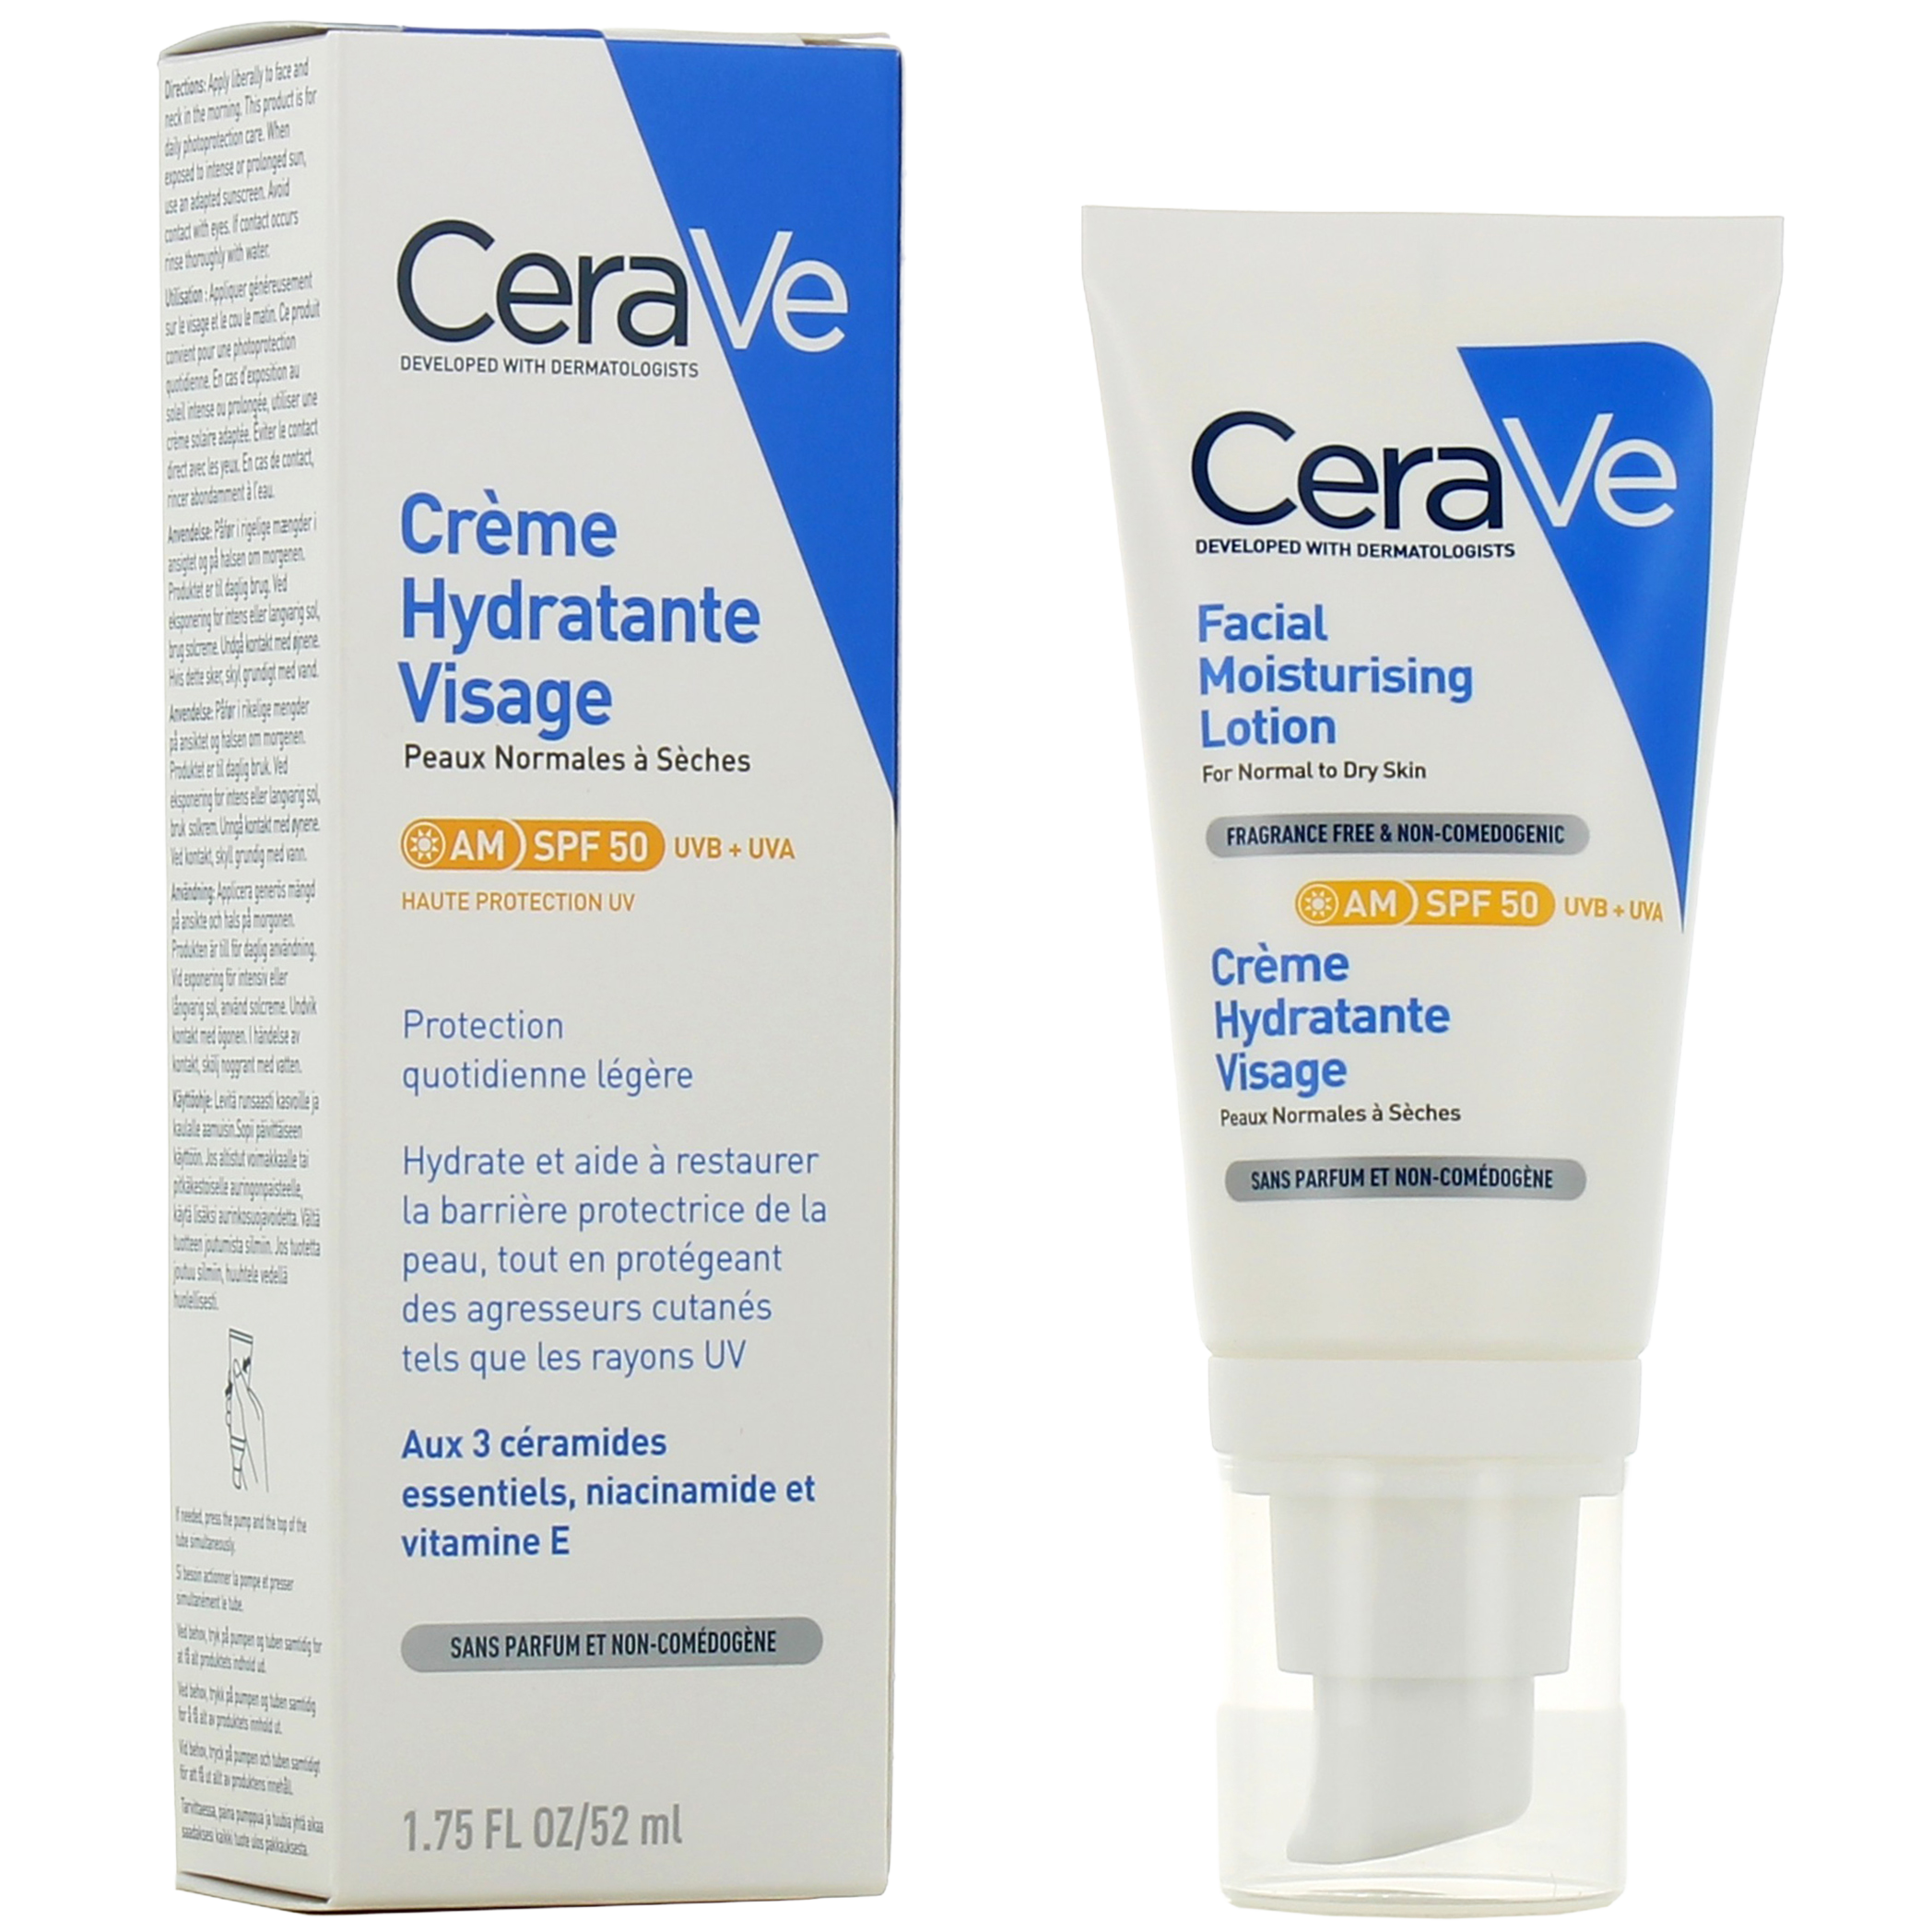 Crème visage hydratante, non-parfumée hypoallergénique